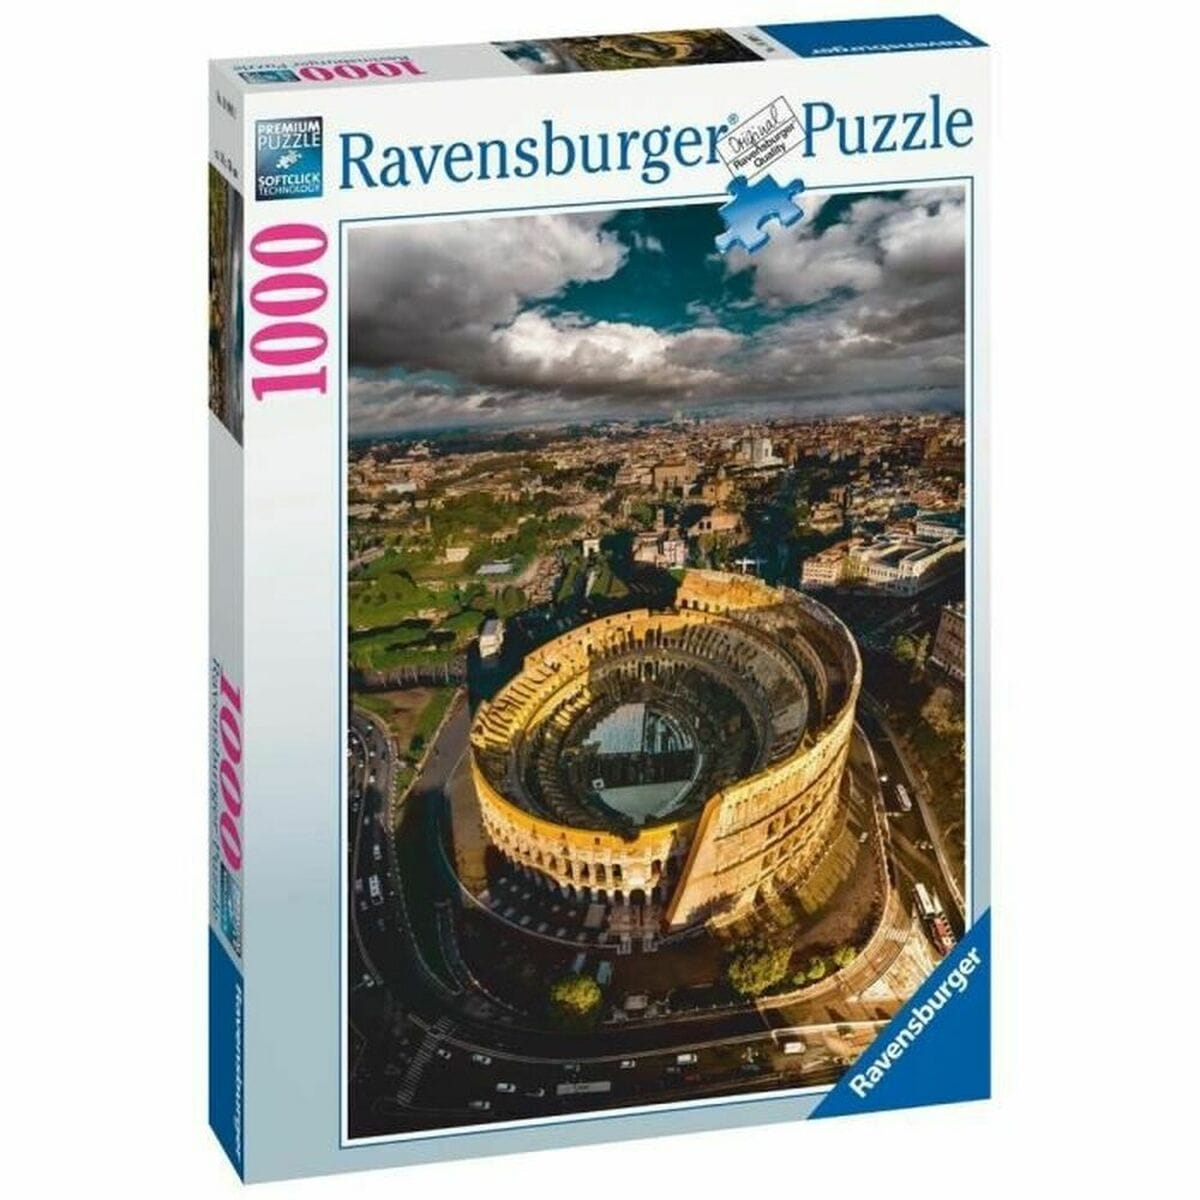 Ravensburger Spielzeug | Kostüme > Spielzeug und Spiele > Puzzle und Bauklötzchen Puzzle Ravensburger Iceland: Kirkjuffellsfoss  (1000 Stücke)